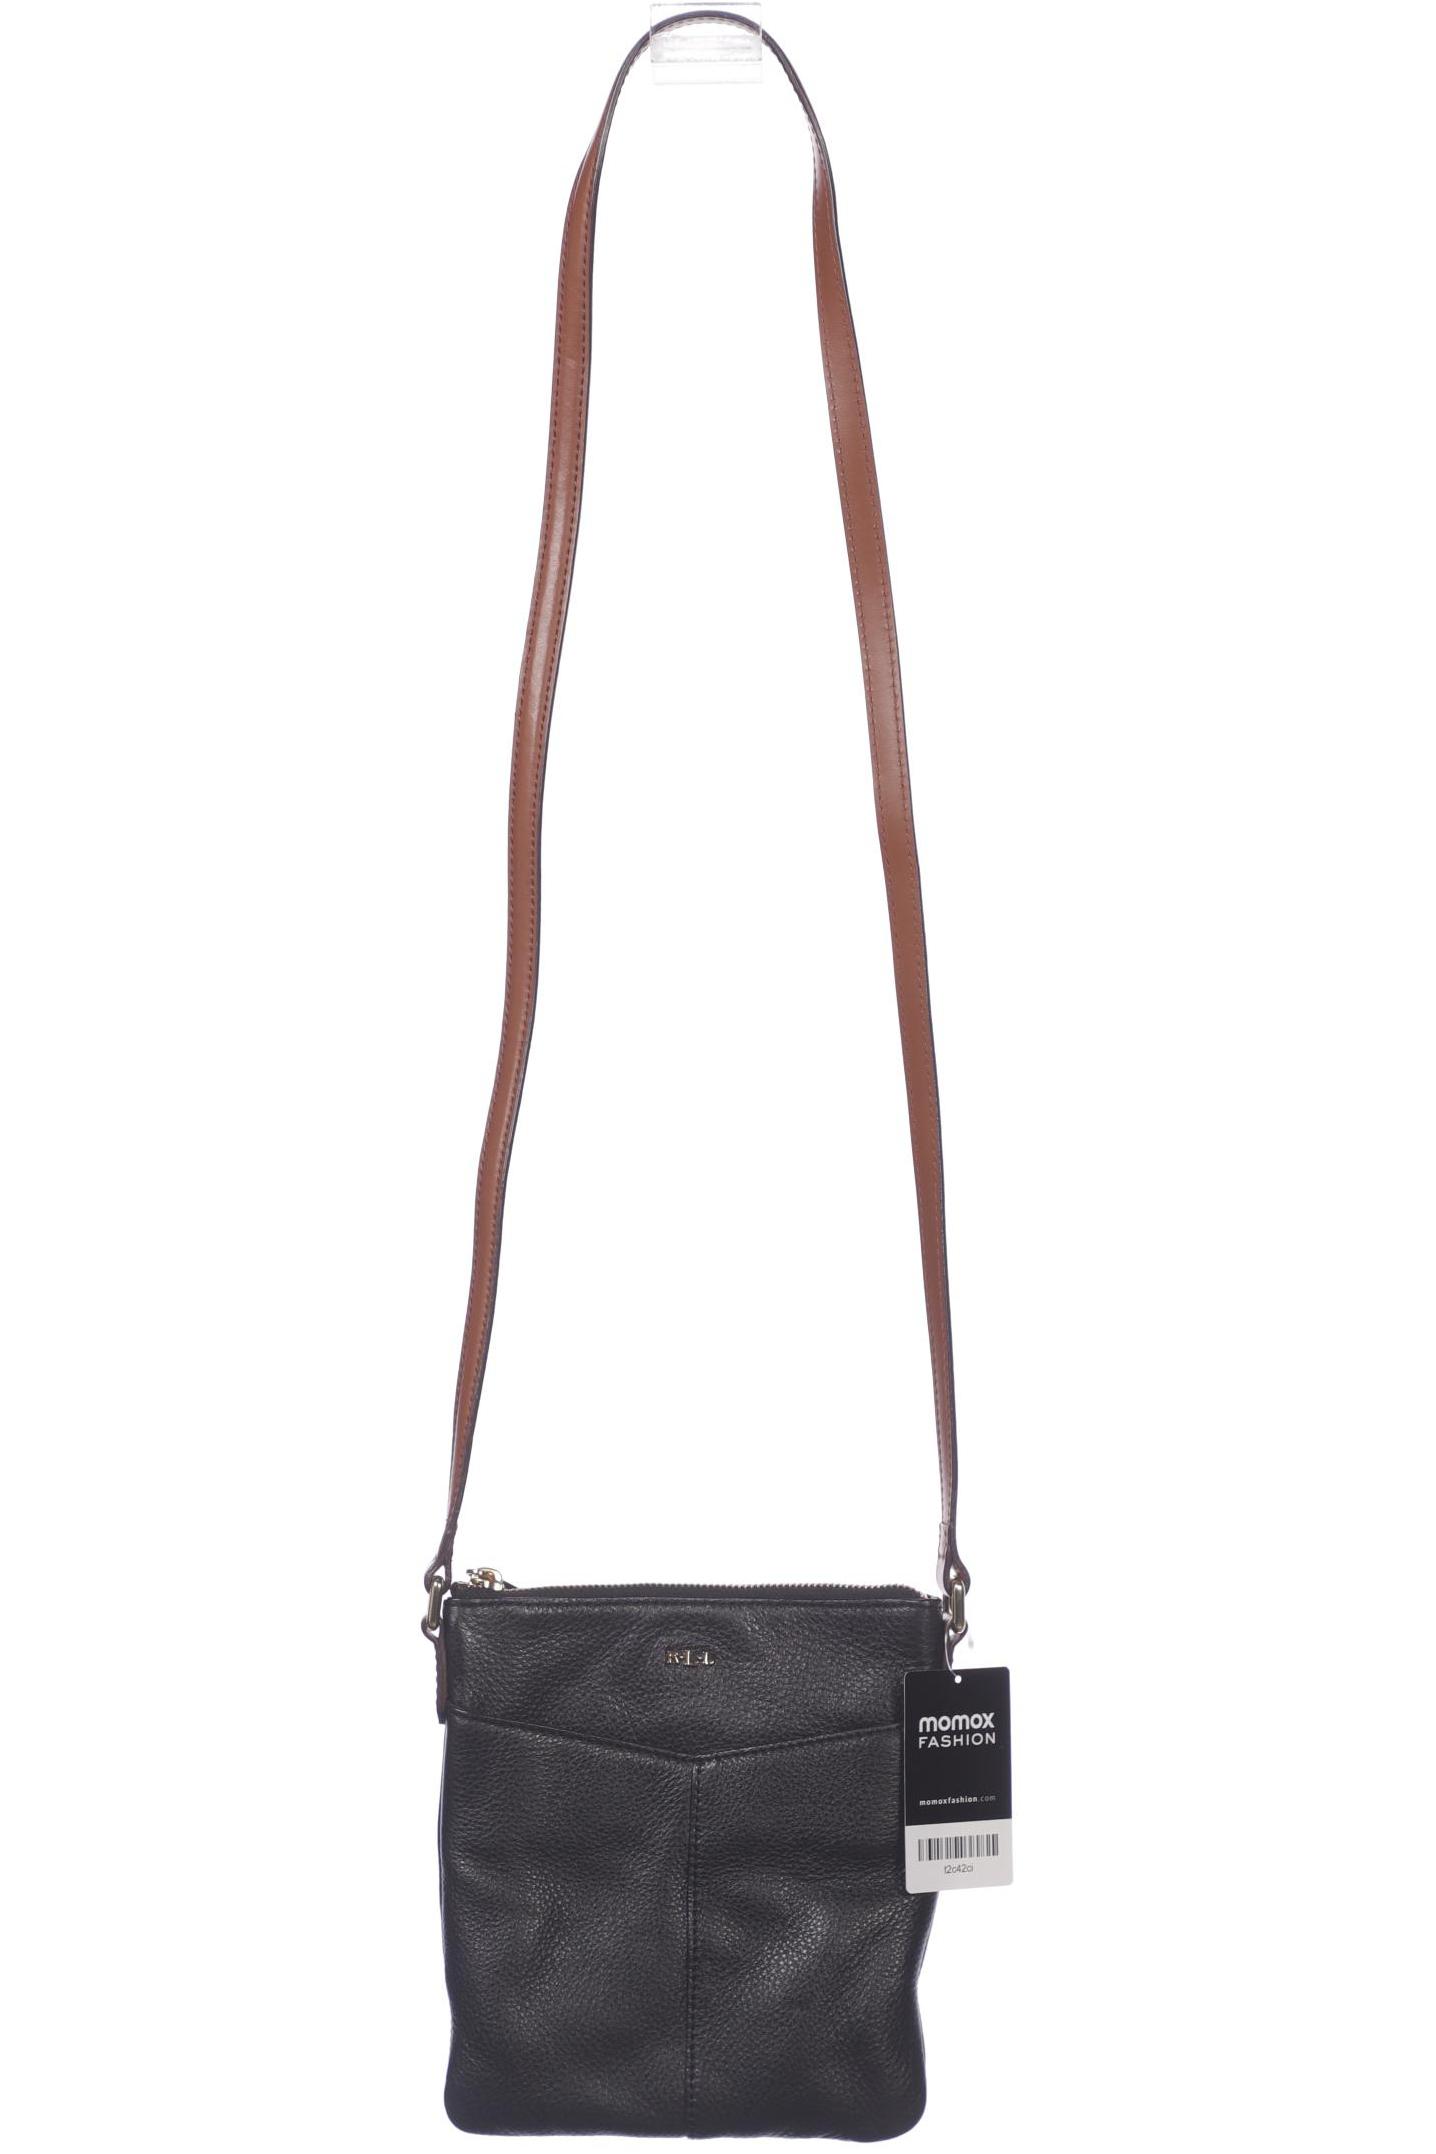 Lauren Ralph Lauren Damen Handtasche, schwarz, Gr. von Lauren Ralph Lauren